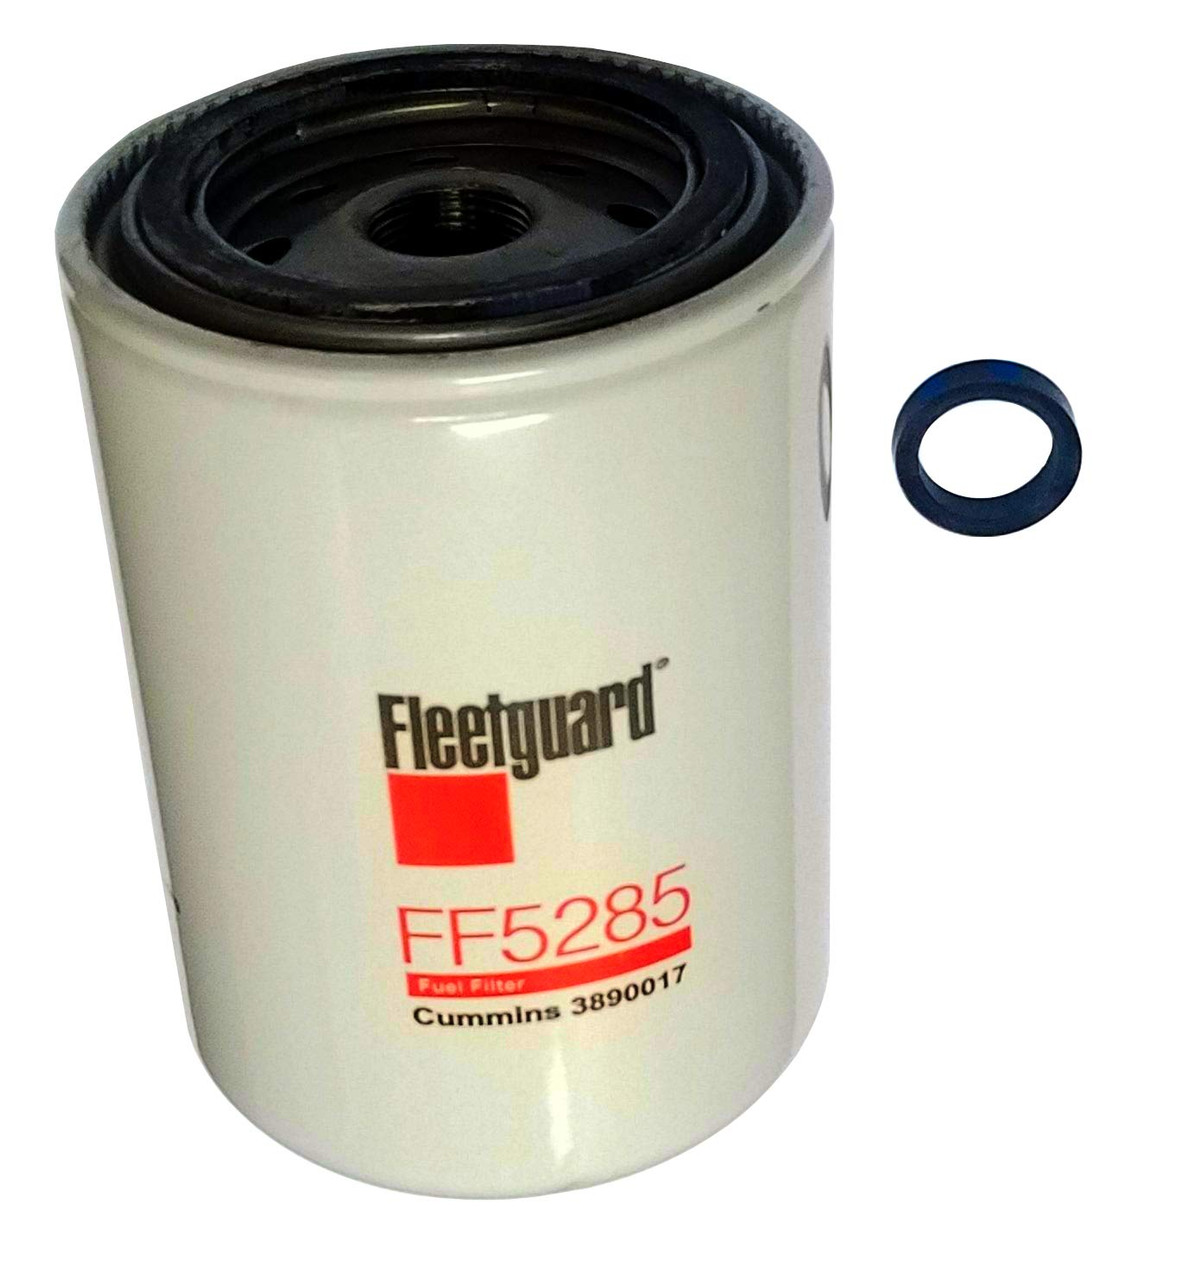 Fleetguard FF5285 Fuel Filter Spin-on